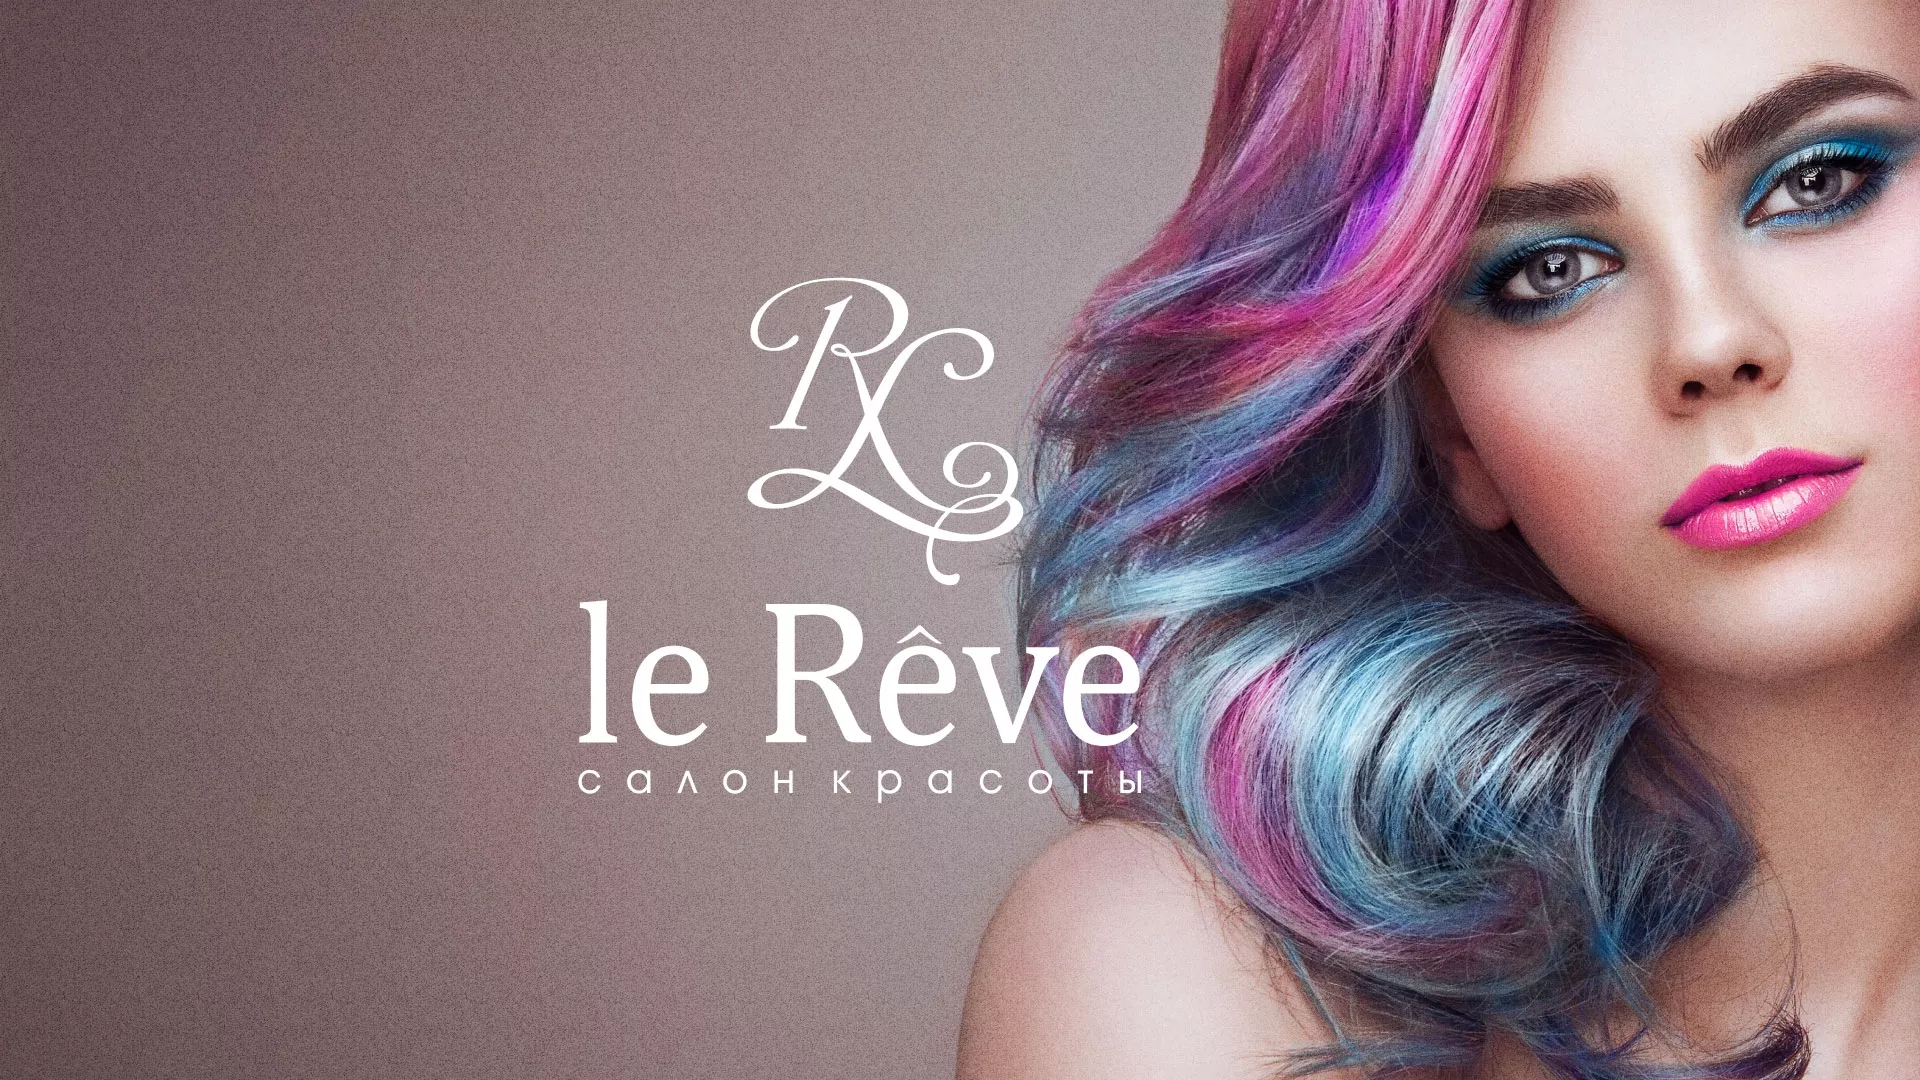 Создание сайта для салона красоты «Le Reve» в Рассказово